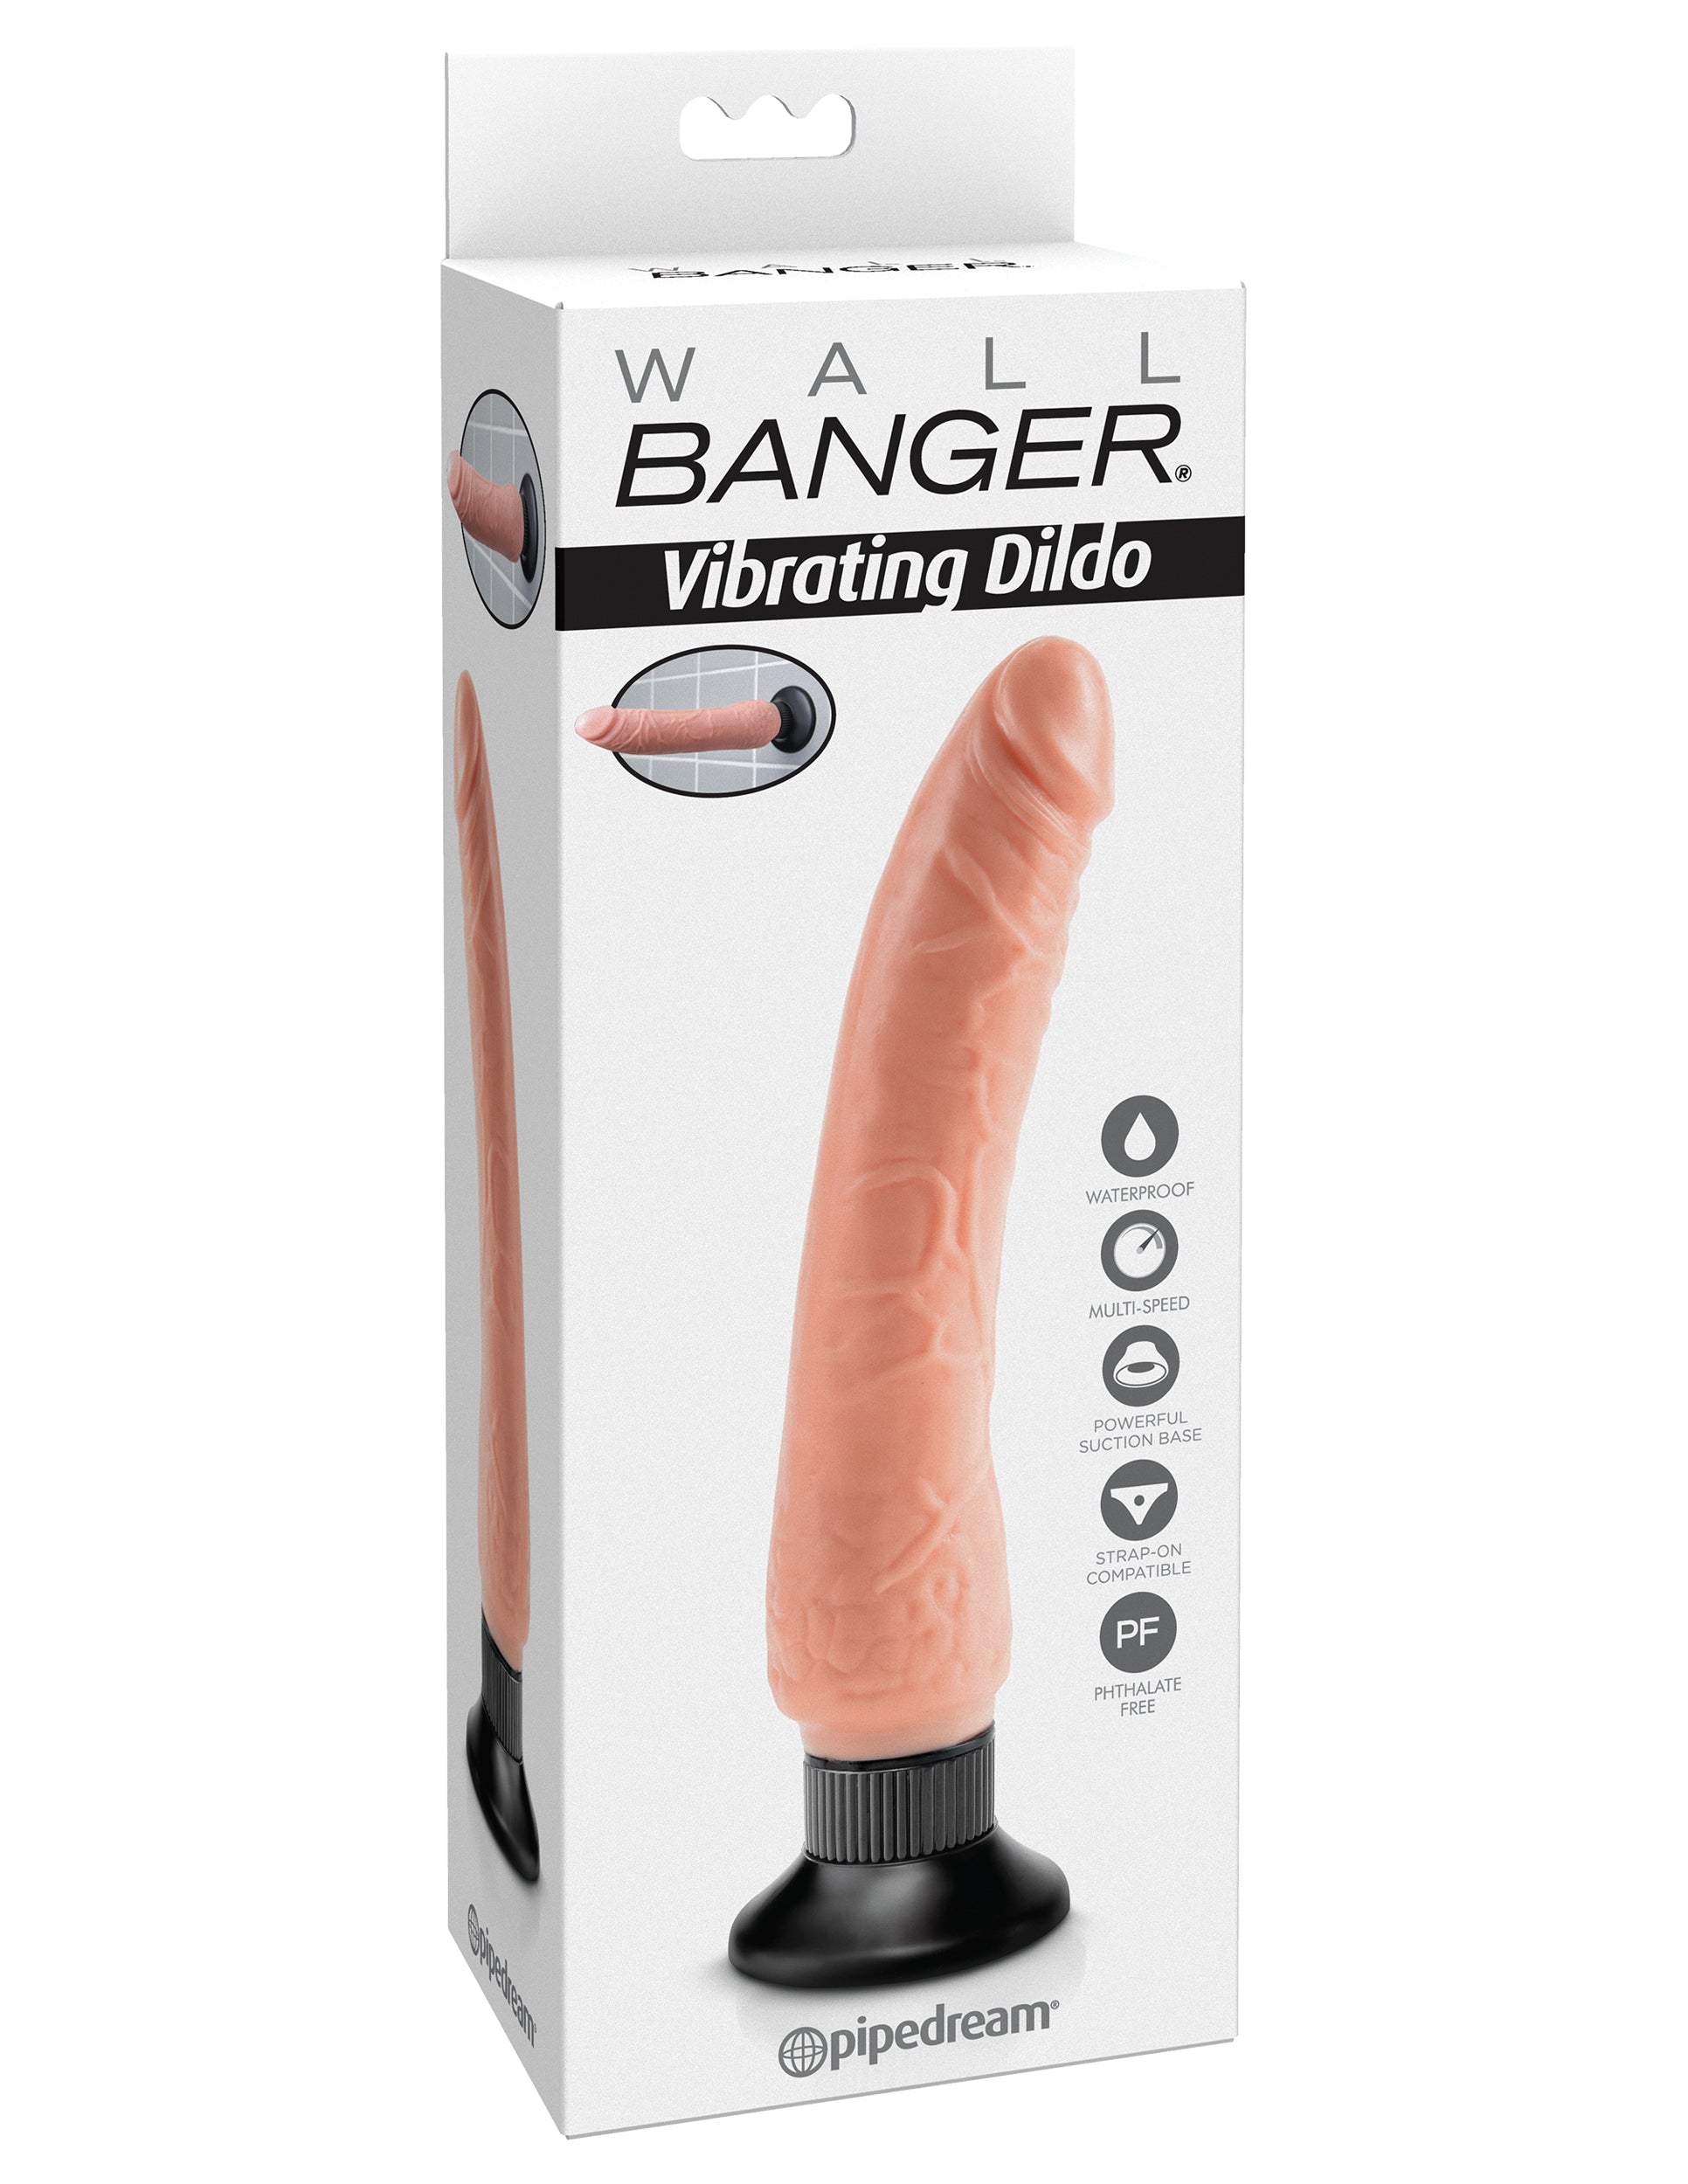 Wall Banger - Vibrating Dildo - Beige Flesh